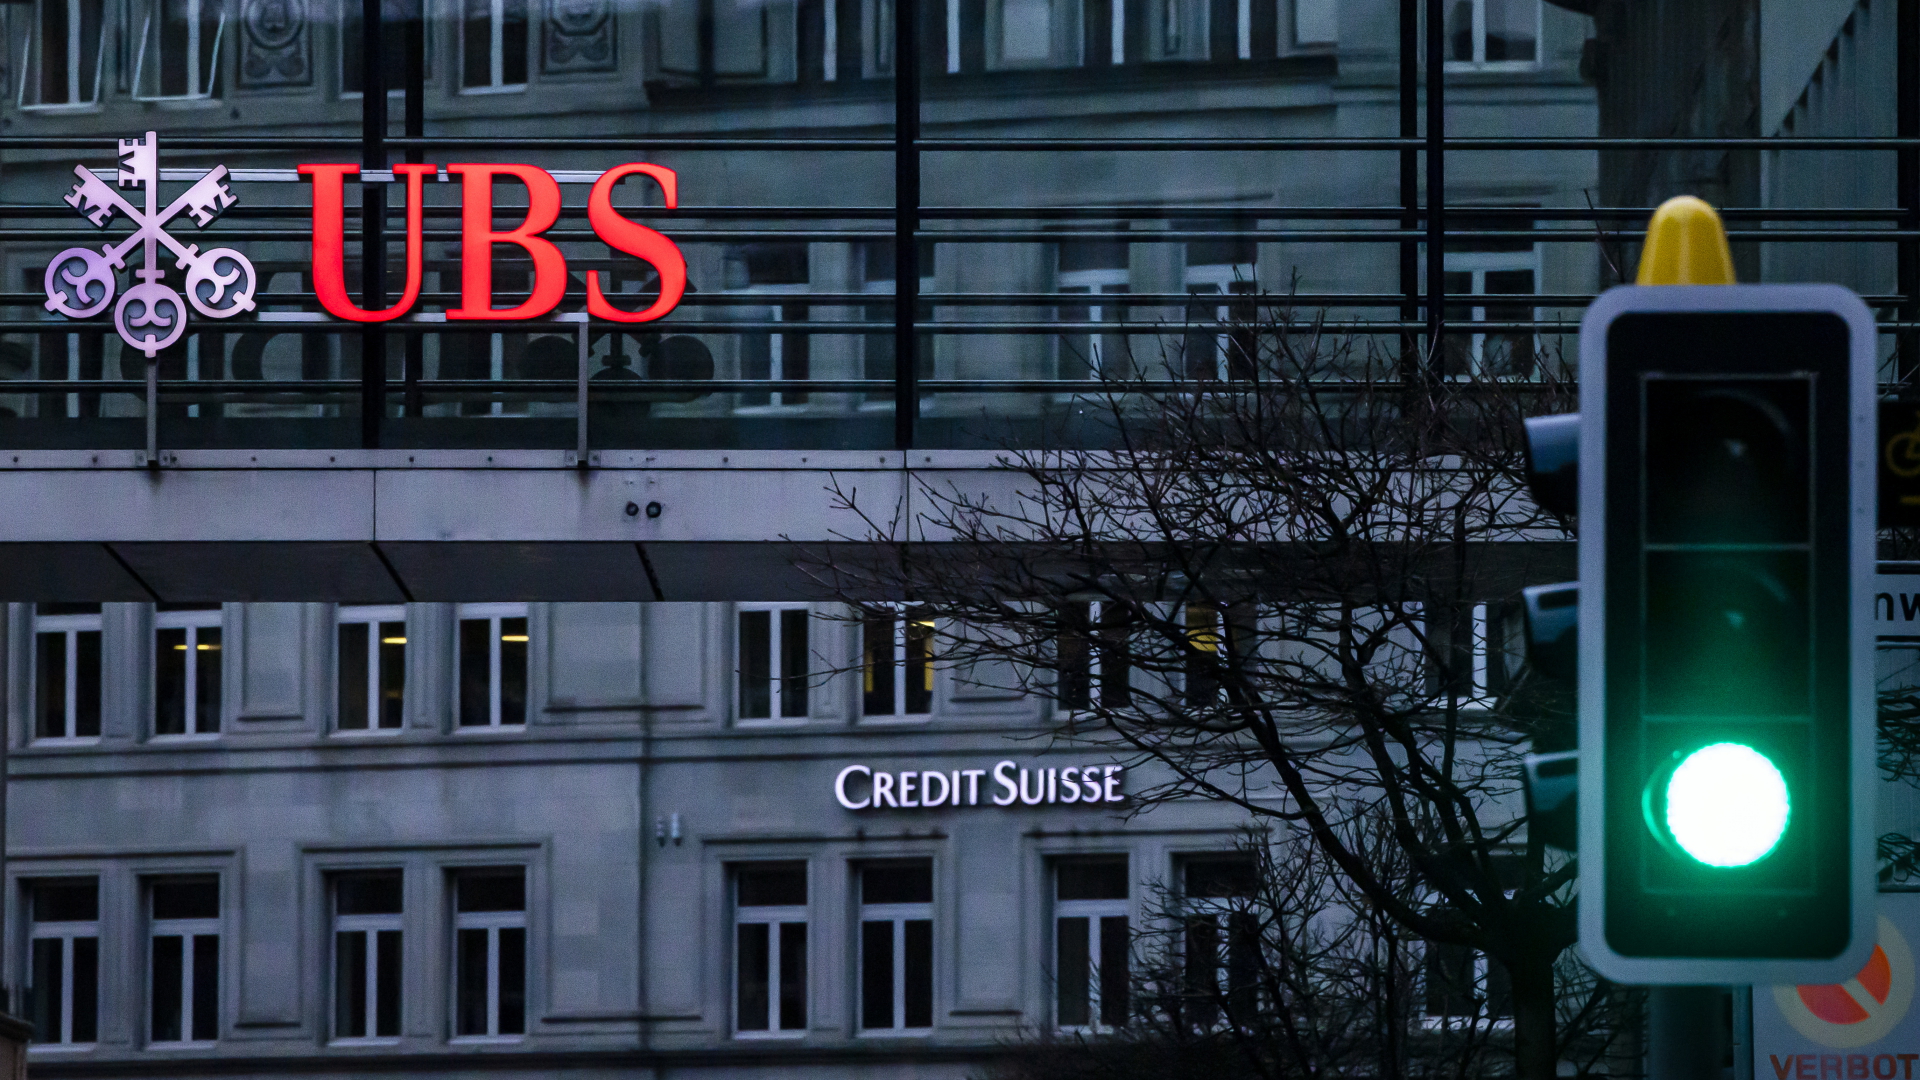 Schweizer Großbankenfusion: Notfallrettung mit Risiken